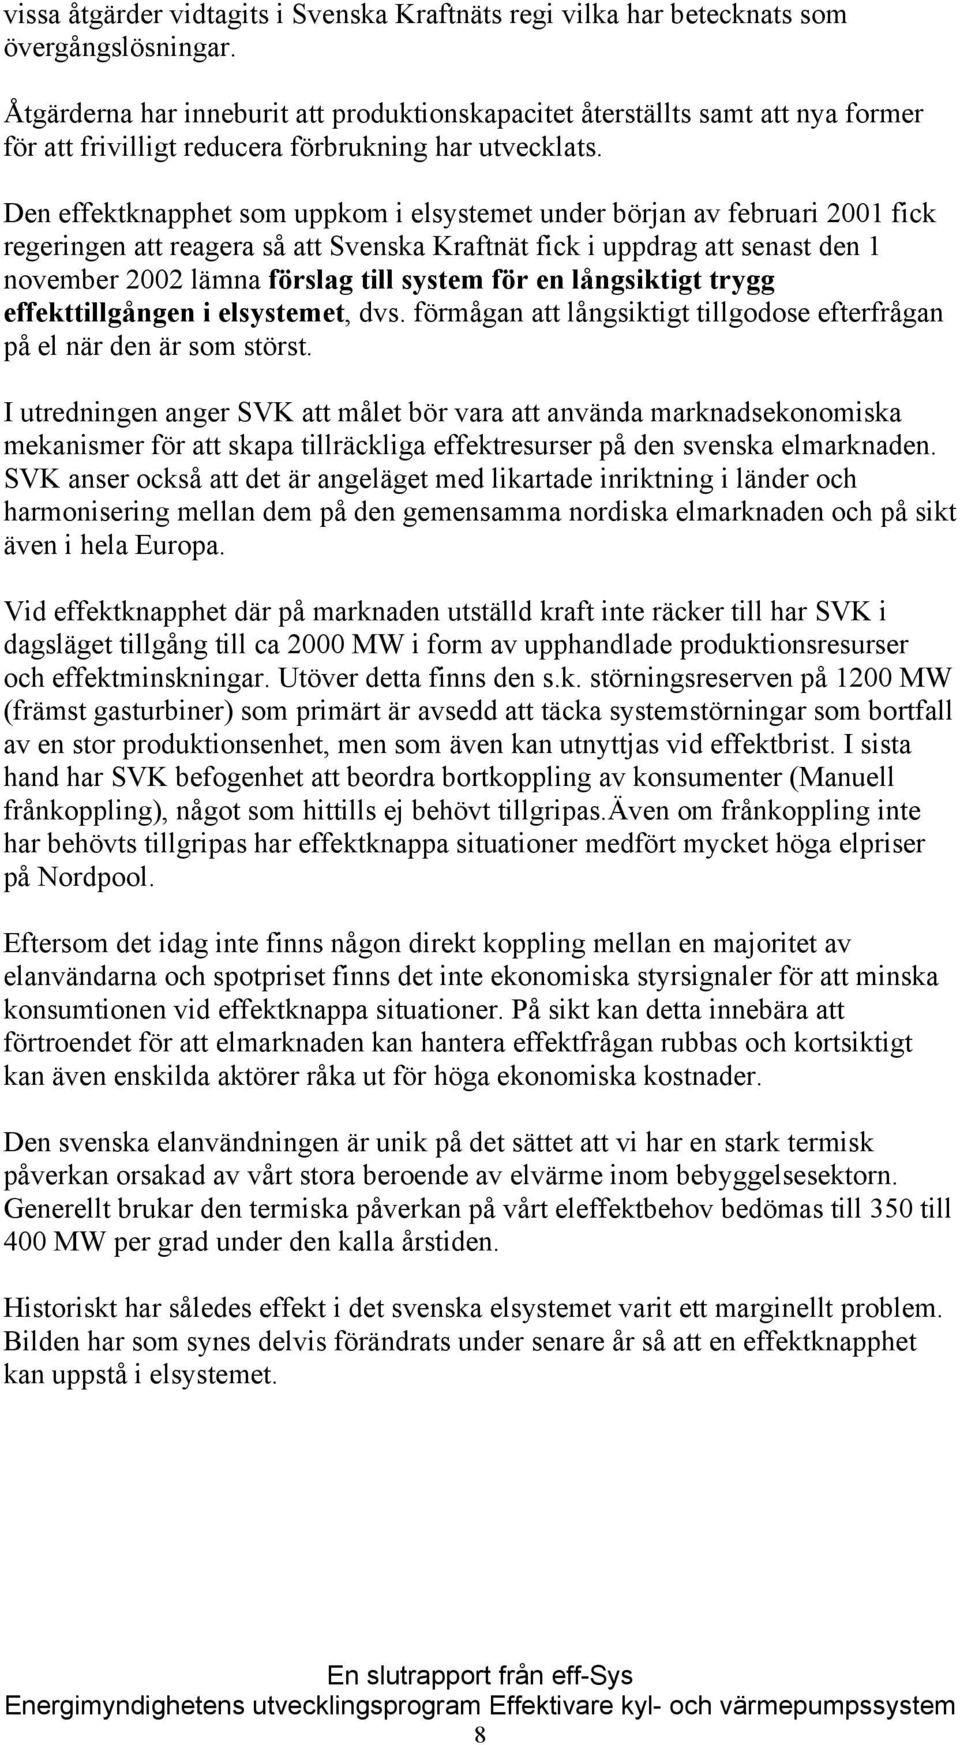 Den effektknapphet som uppkom i elsystemet under början av februari 2001 fick regeringen att reagera så att Svenska Kraftnät fick i uppdrag att senast den 1 november 2002 lämna förslag till system